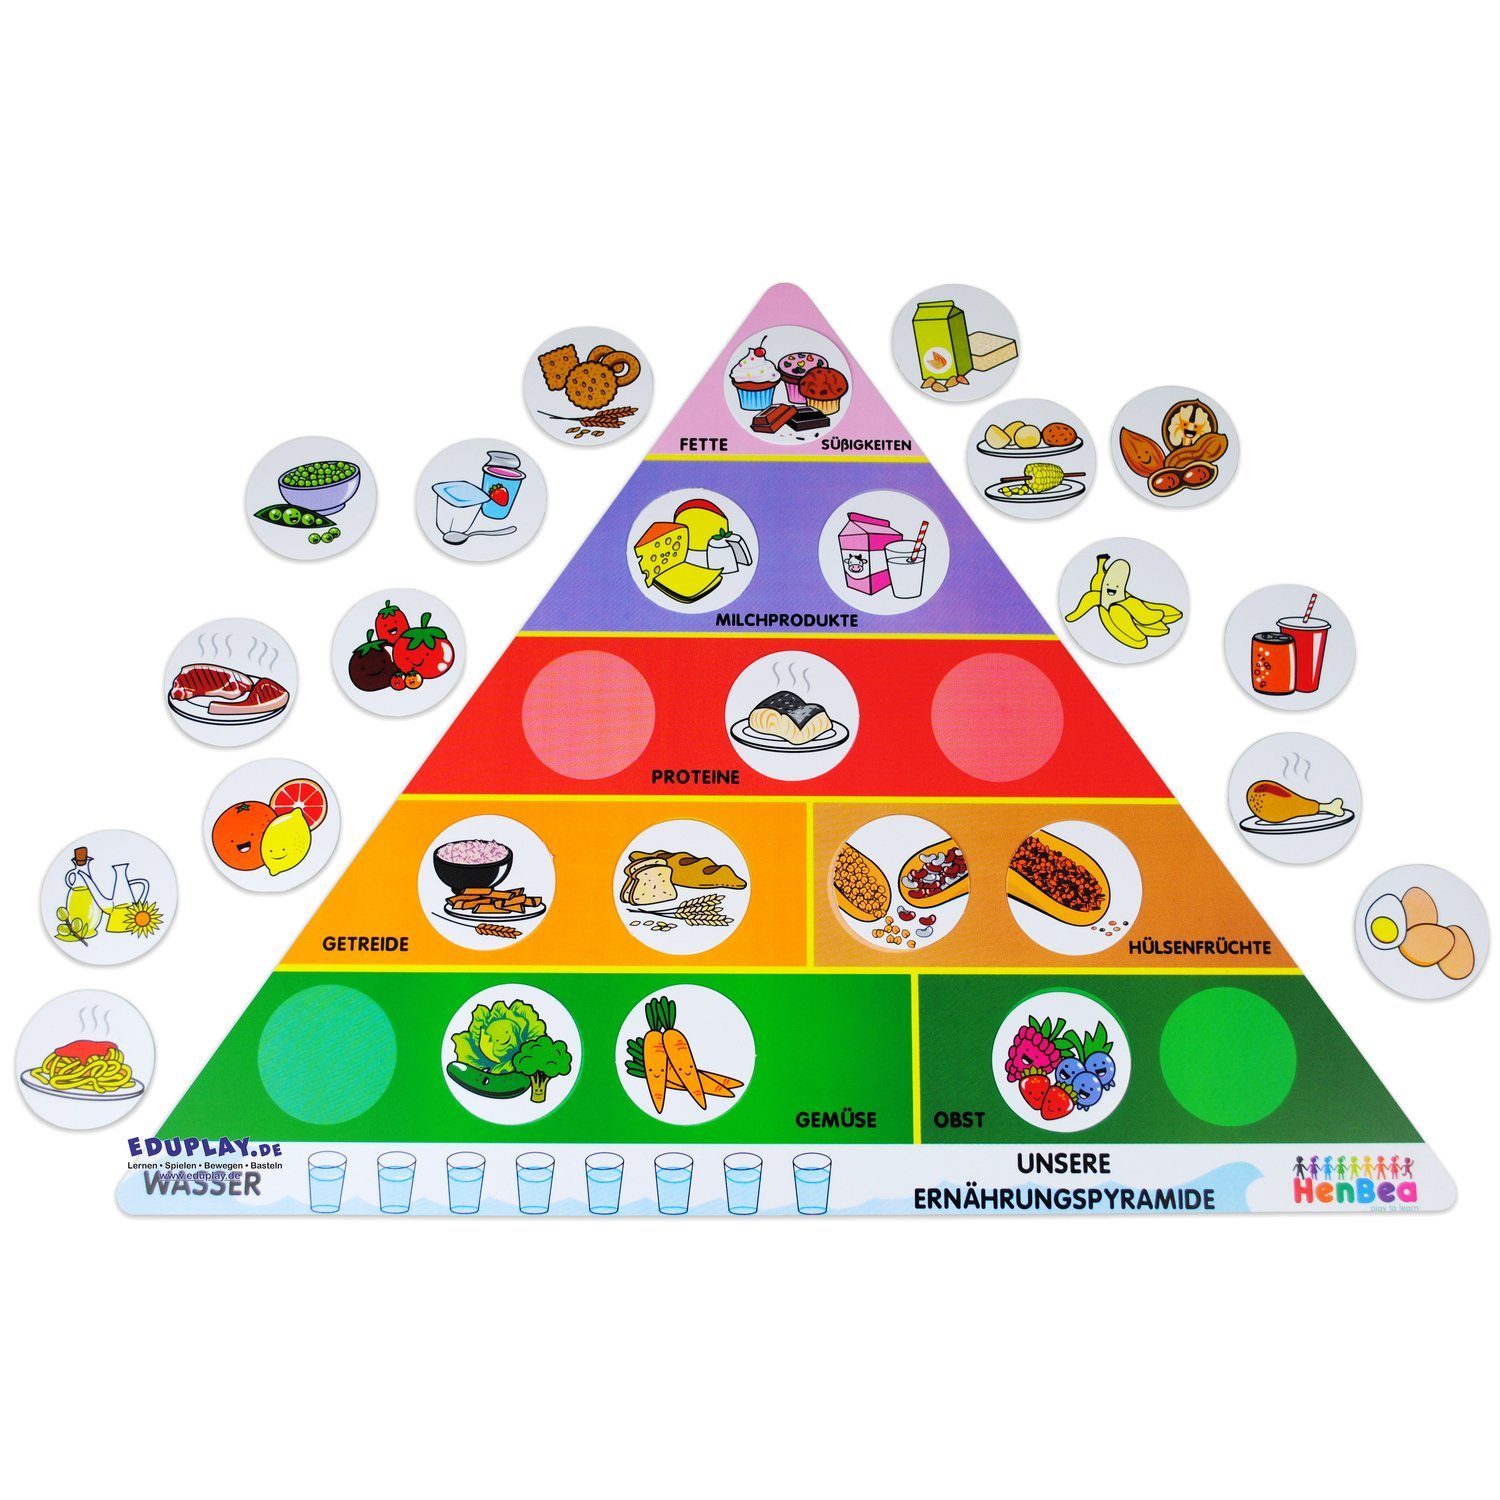 EDUPLAY Lernspielzeug Ernährungspyramide, Kunststoff, 61 x 45 cm